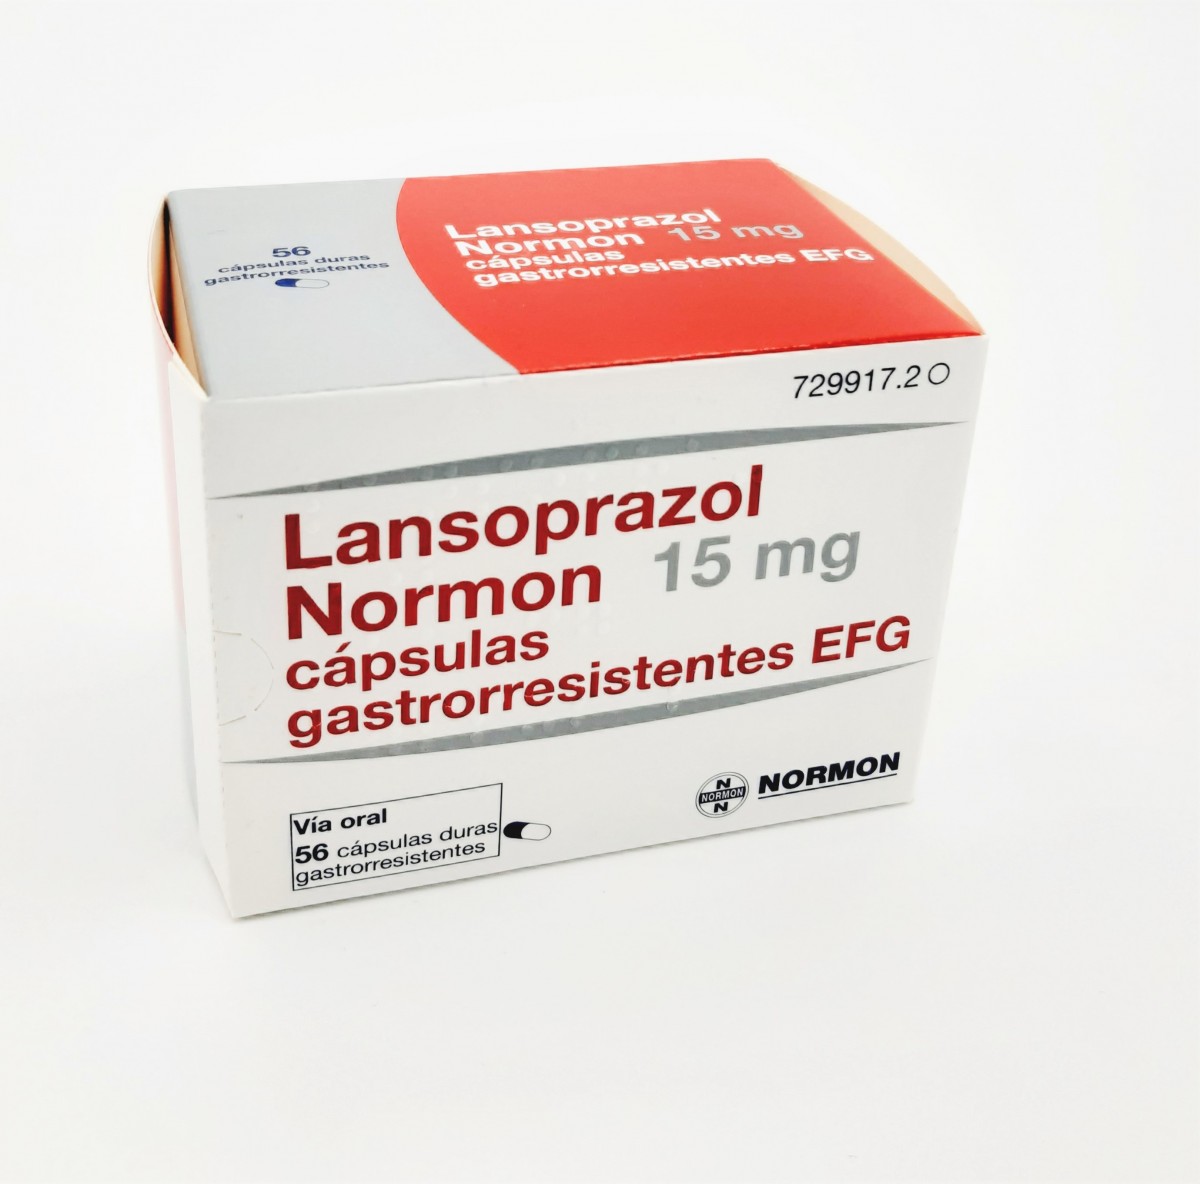 LANSOPRAZOL NORMON 15 mg CAPSULAS GASTRORRESISTENTES EFG, 500 cápsulas fotografía del envase.